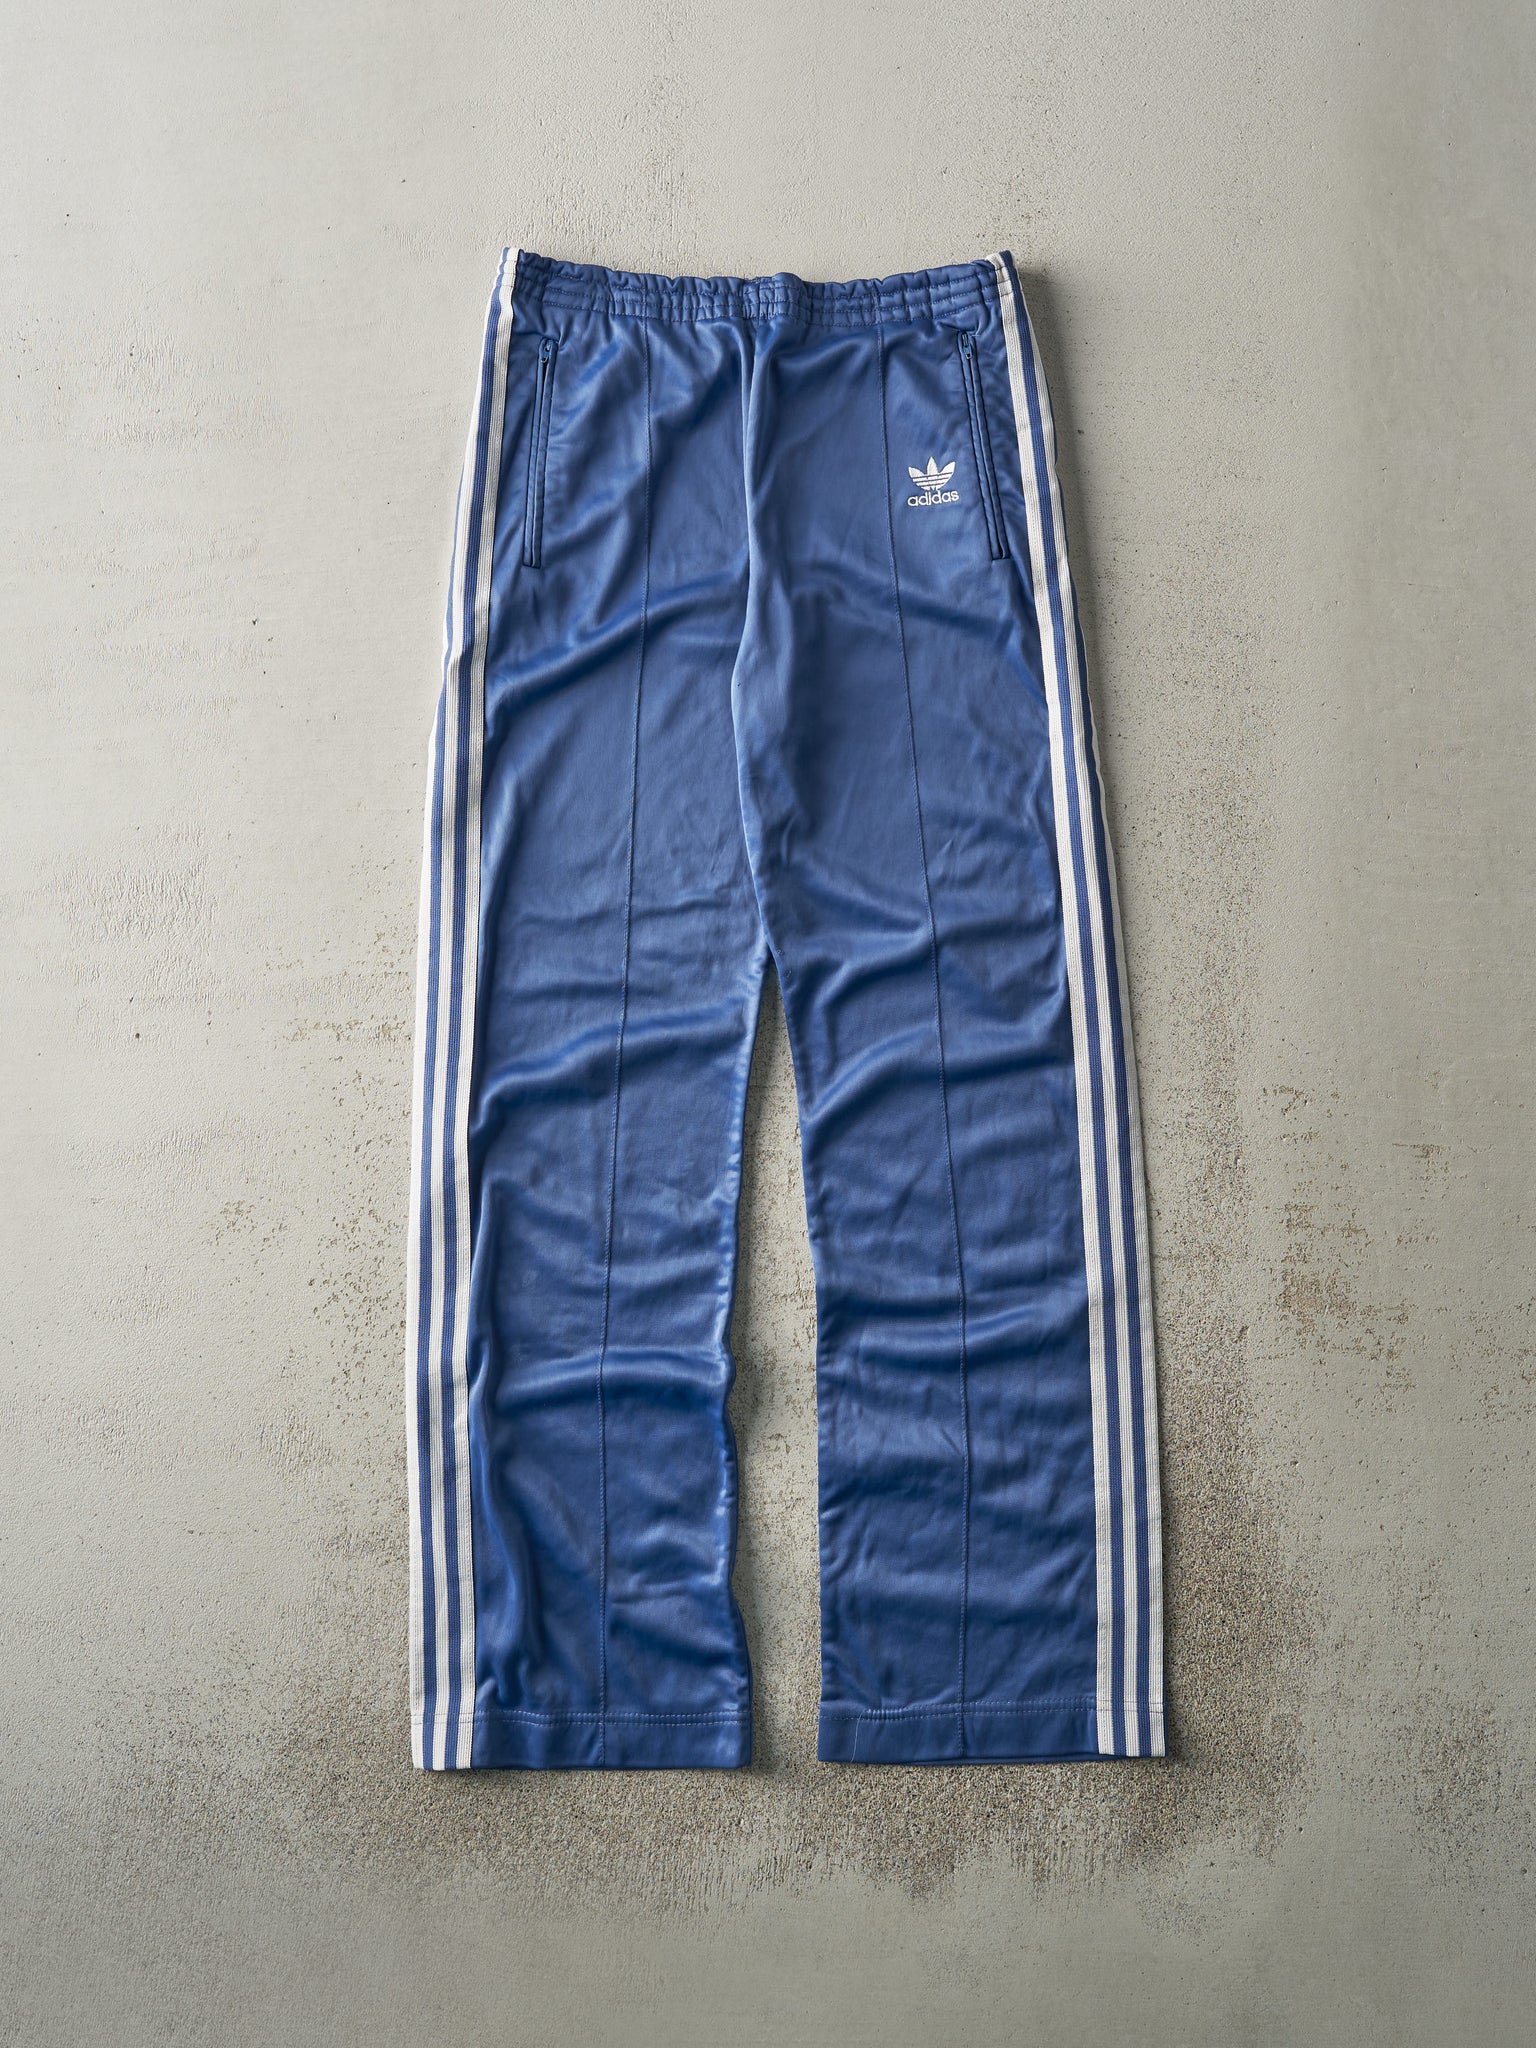 Vintage 90s Slate Blue Adidas Track Pants (32x32)